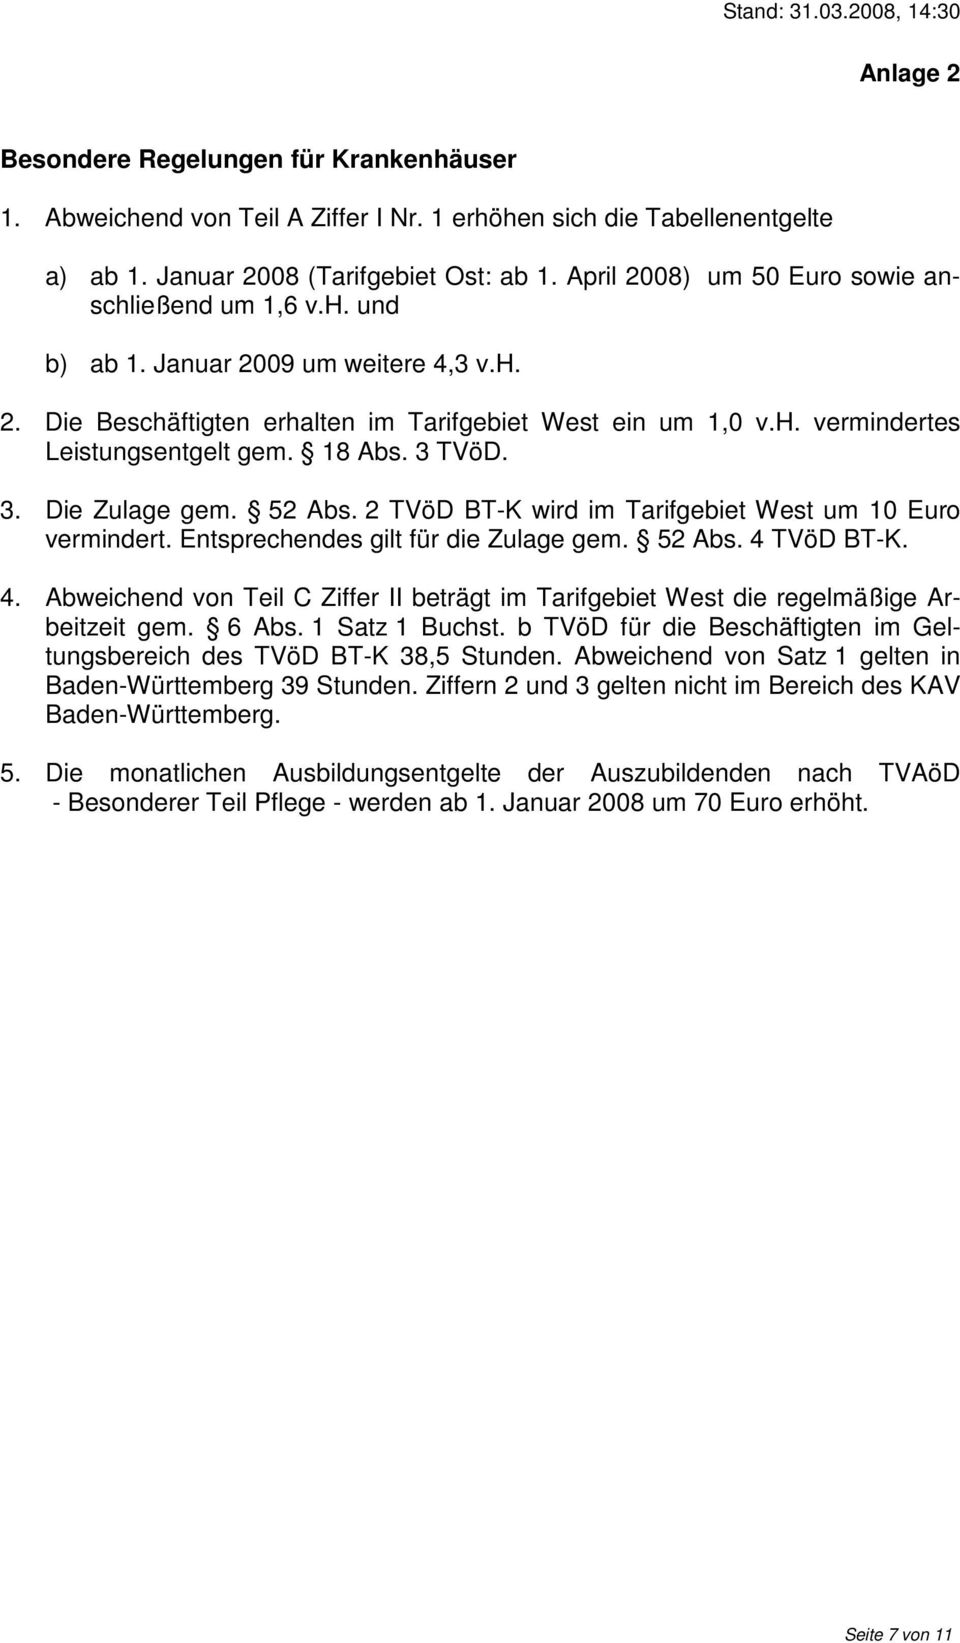 18 Abs. 3 TVöD. 3. Die Zulage gem. 52 Abs. 2 TVöD BT-K wird im Tarifgebiet West um 10 Euro vermindert. Entsprechendes gilt für die Zulage gem. 52 Abs. 4 